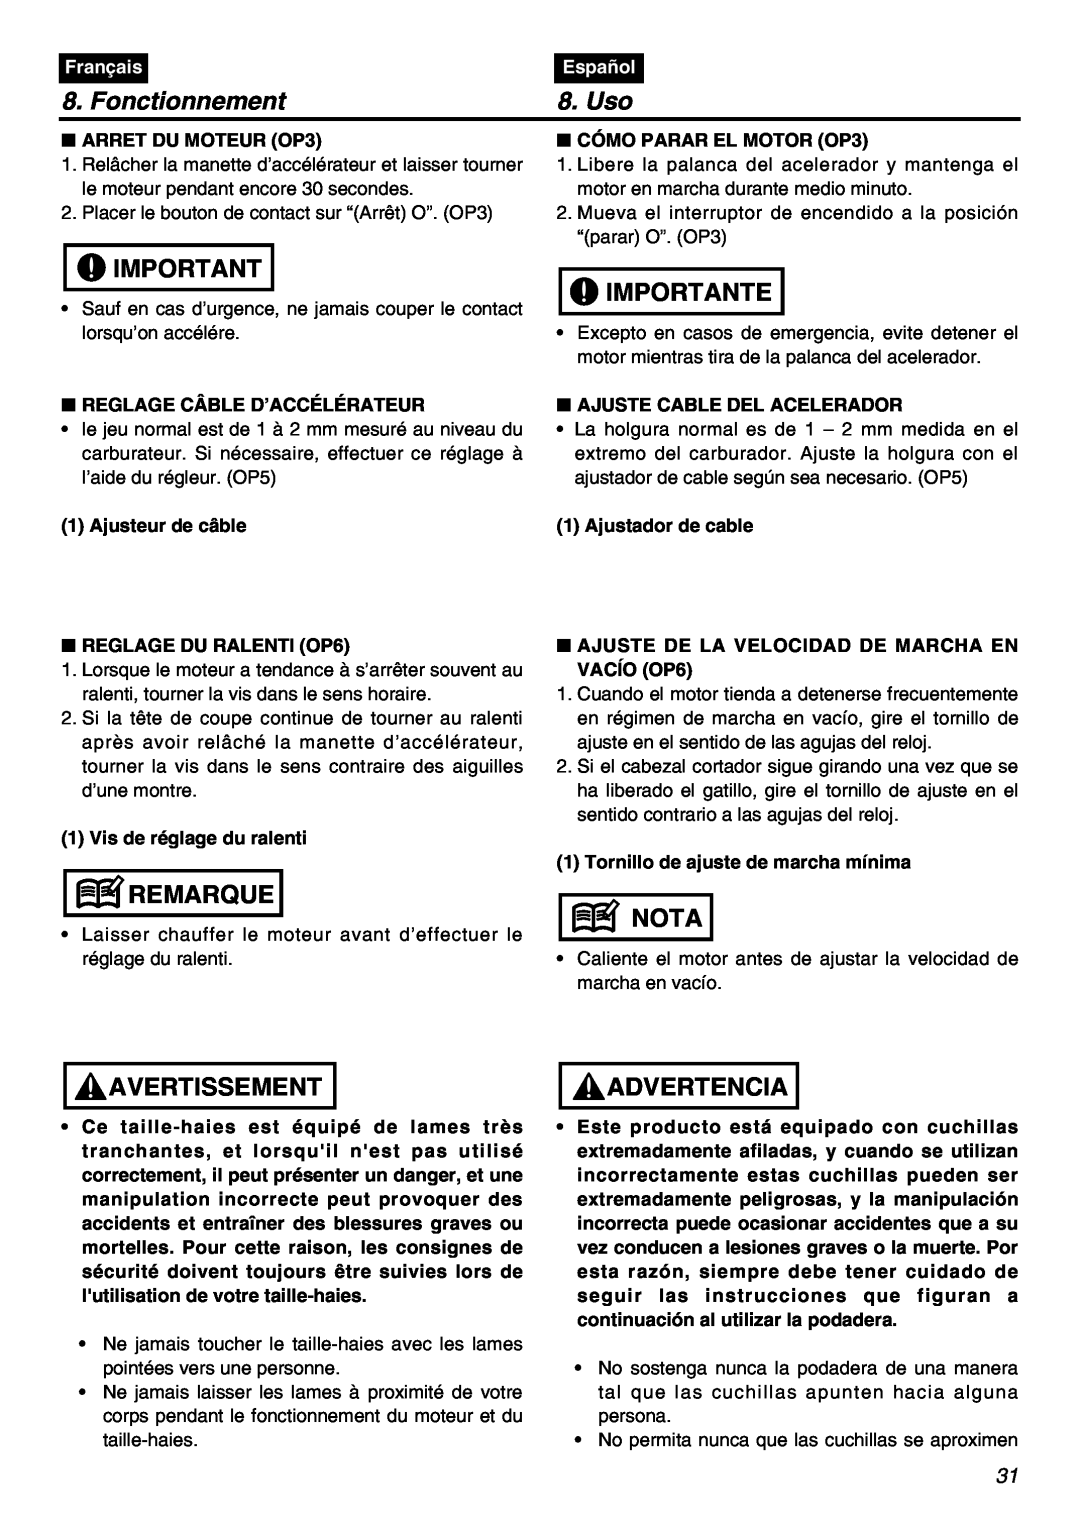 Univex SRTZ2401-CA manual Fonctionnement, Uso, Importante, Remarque, Avertissement, Nota, Advertencia, Français, Español 